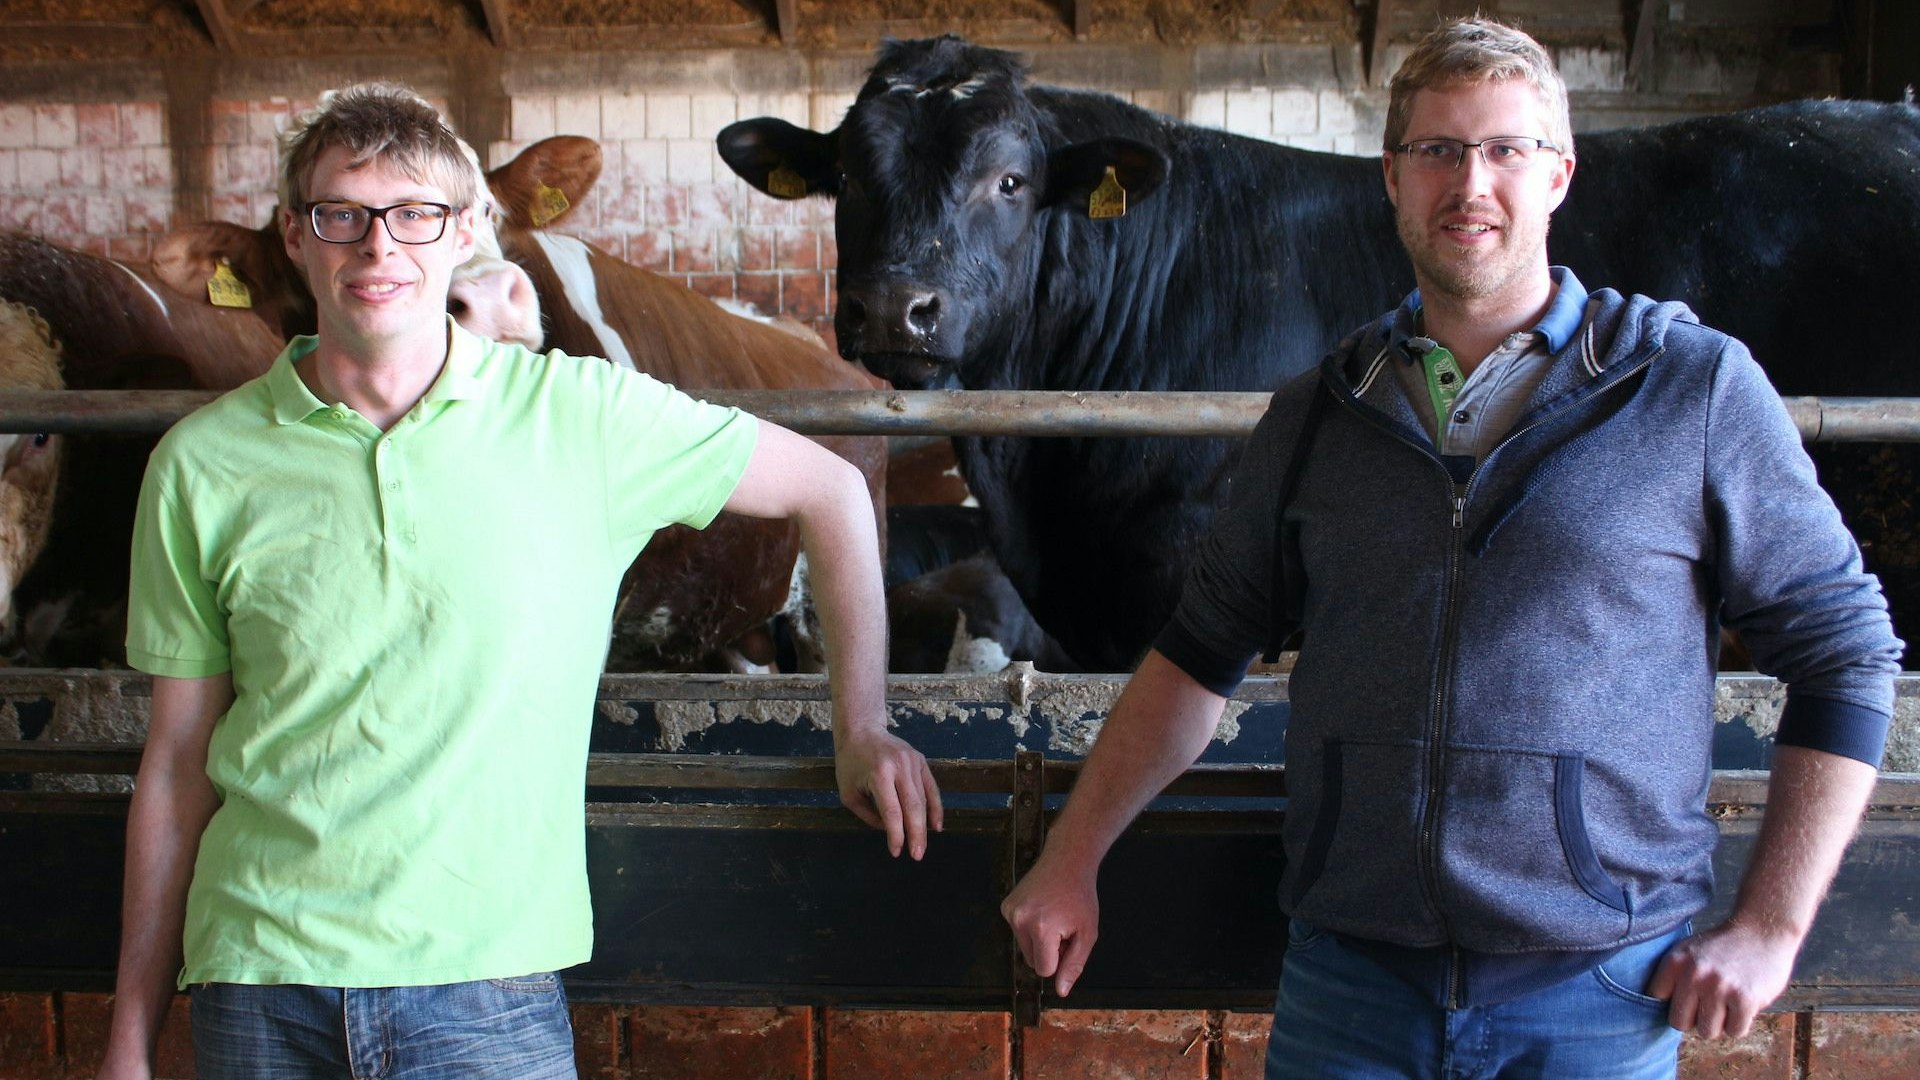 Glückliche Rinder sind ihr Geschäftsgeheimniss: Alexander (links) und Christian Rolfes vertreiben ihre Fleischprodukte über ihre Eigenmarke Bakumer Rindfleisch. Foto: Heinzel